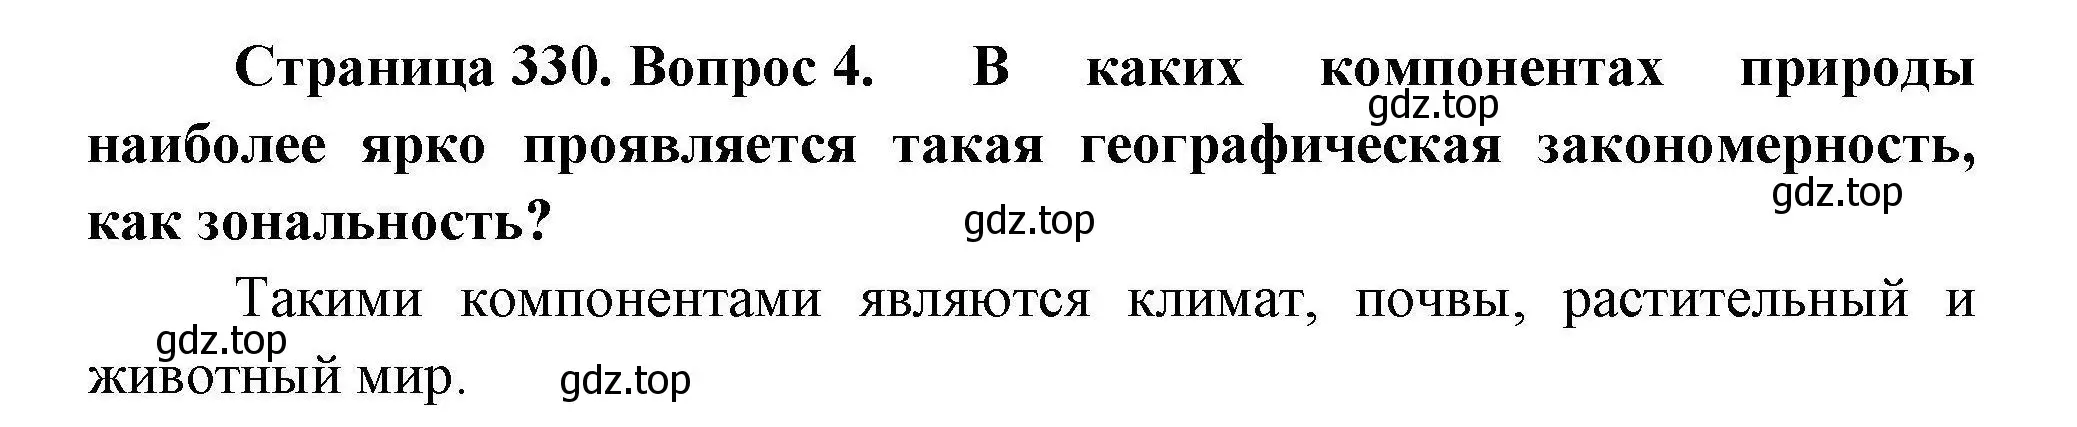 Решение номер 4 (страница 330) гдз по географии 7 класс Коринская, Душина, учебник